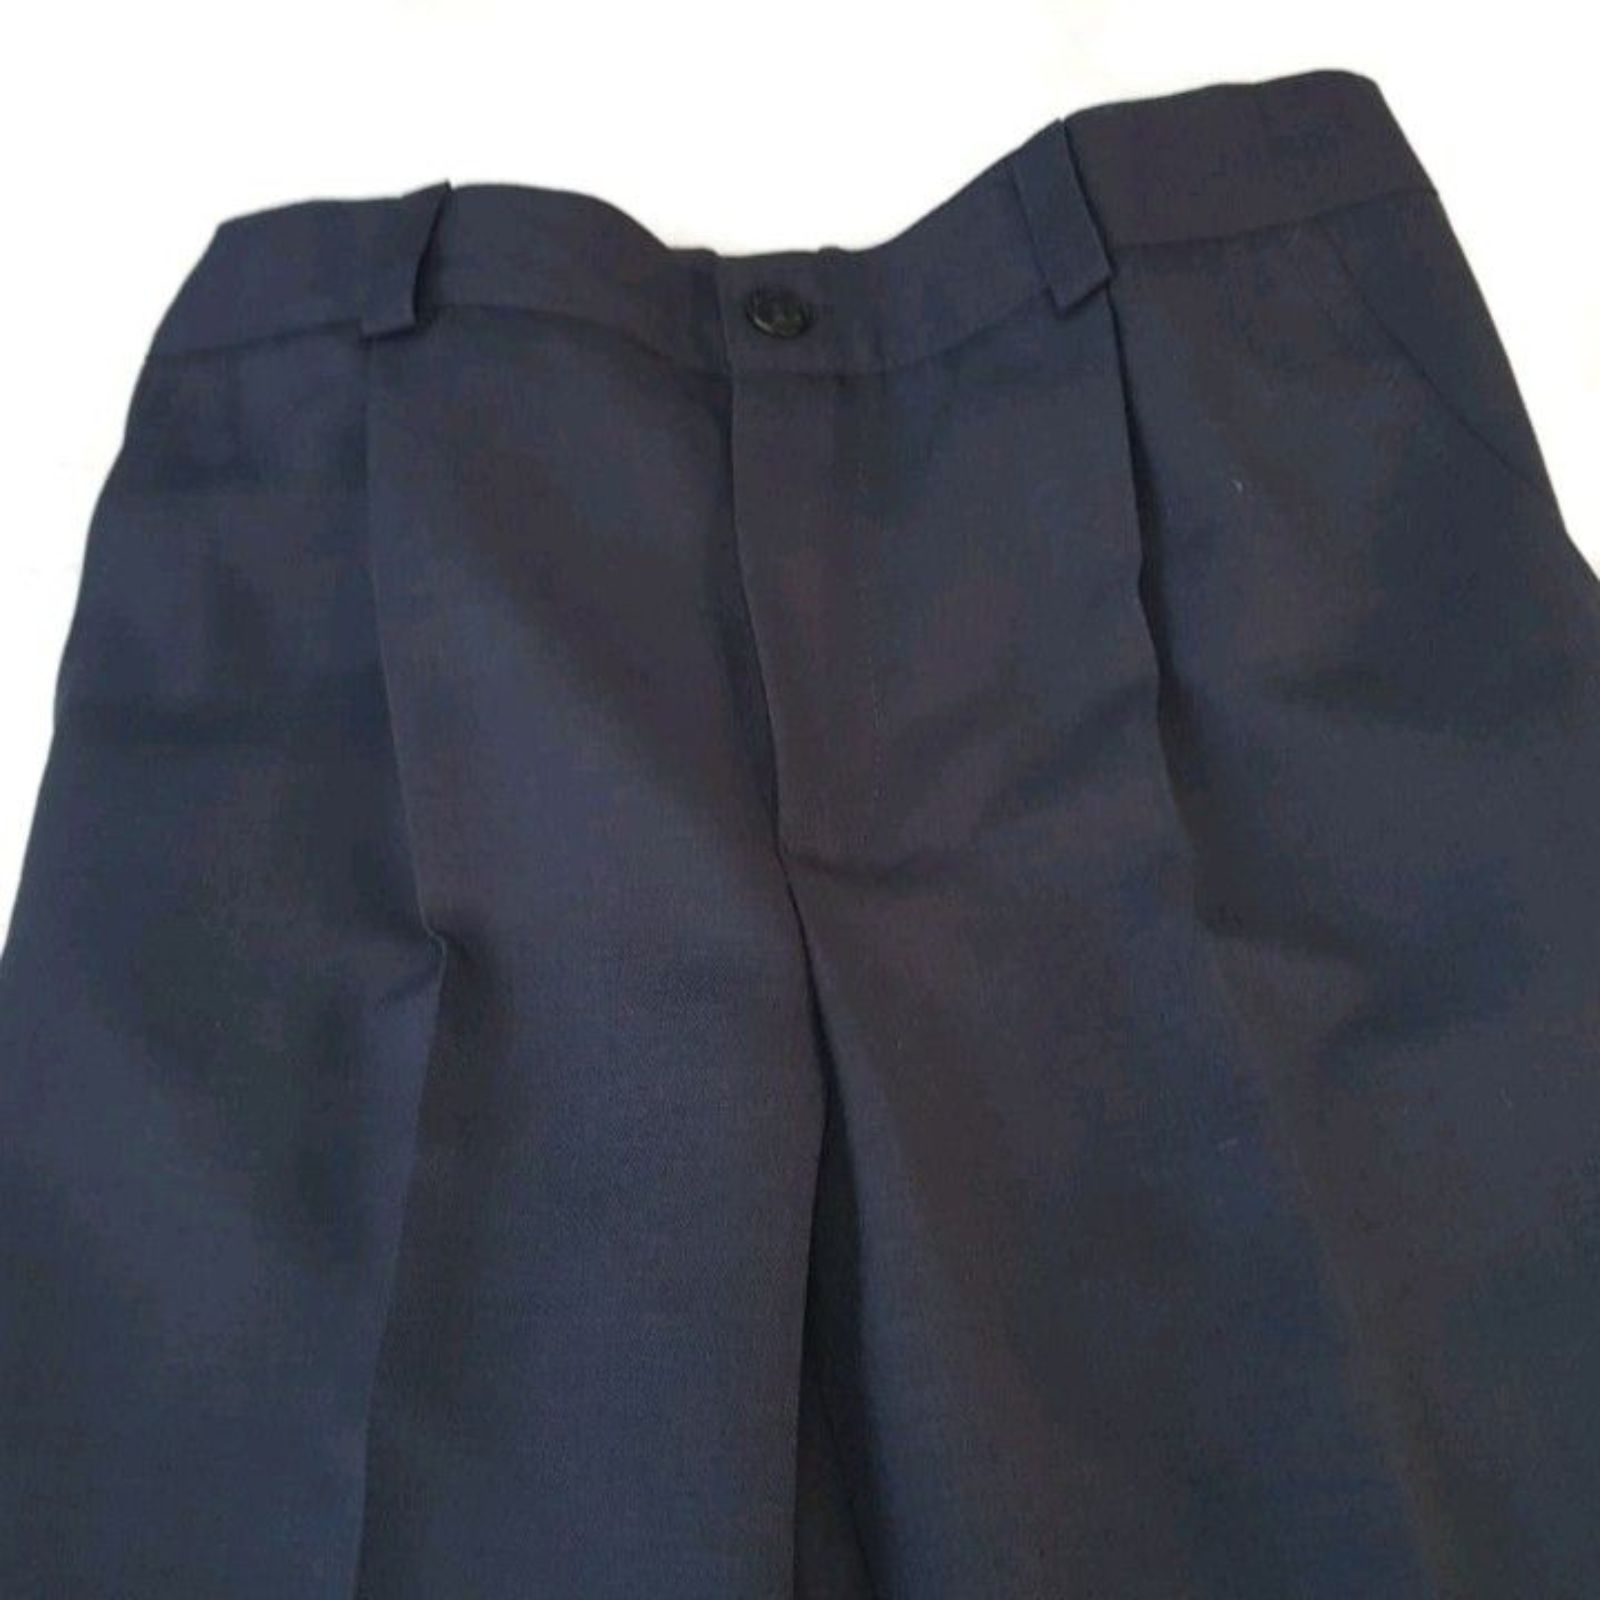 Pantaloni uniformă școlară – set două bucăți 2